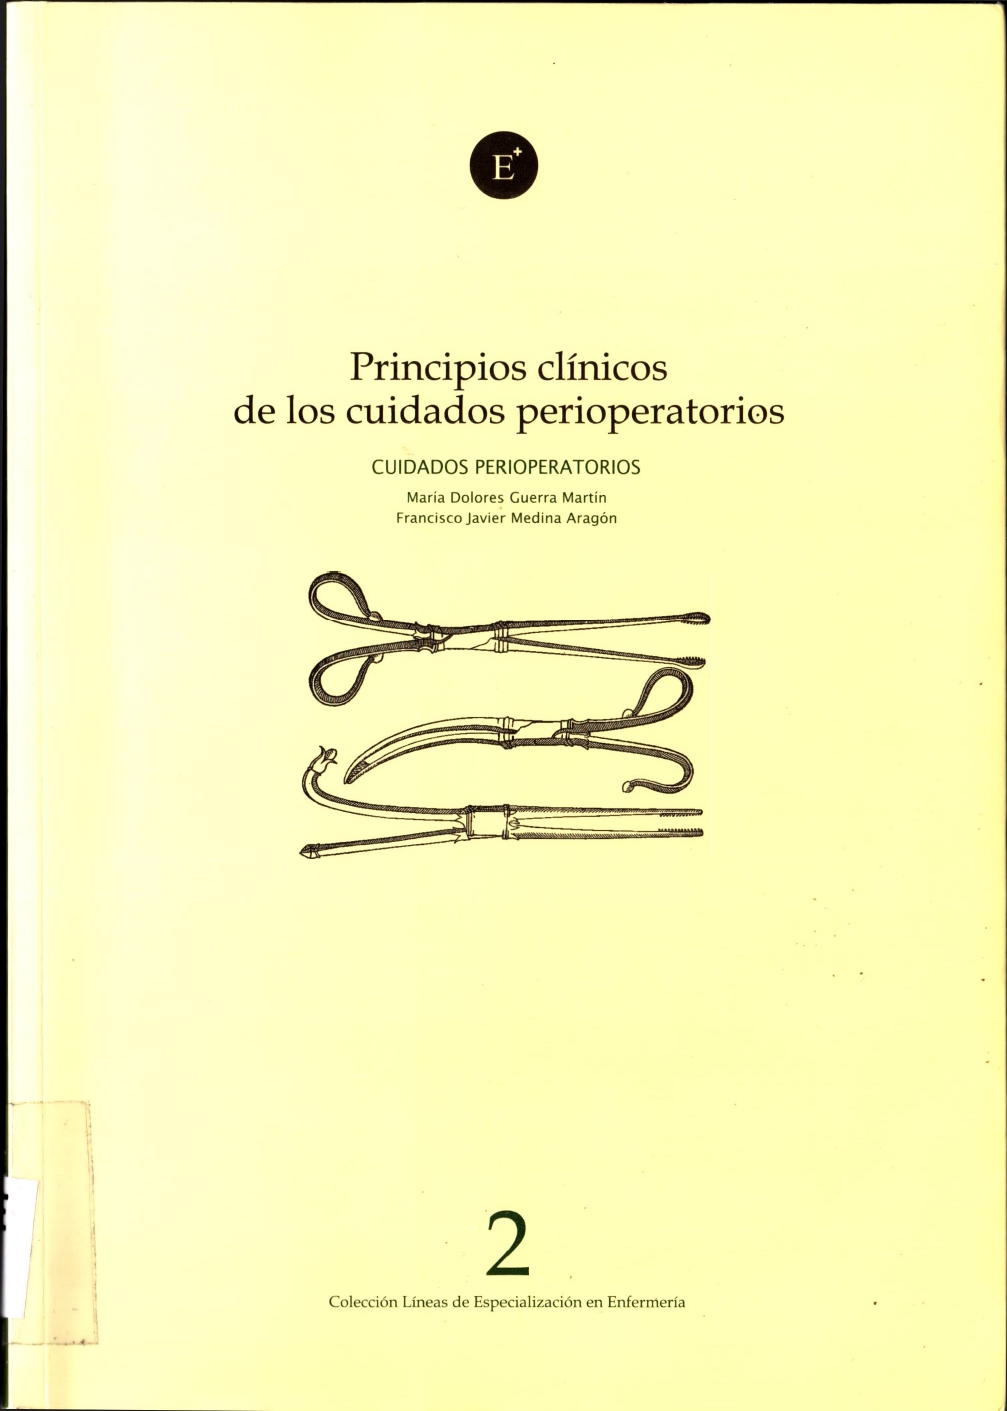 Imagen de portada del libro Principios clínicos de los cuidados perioperatorios